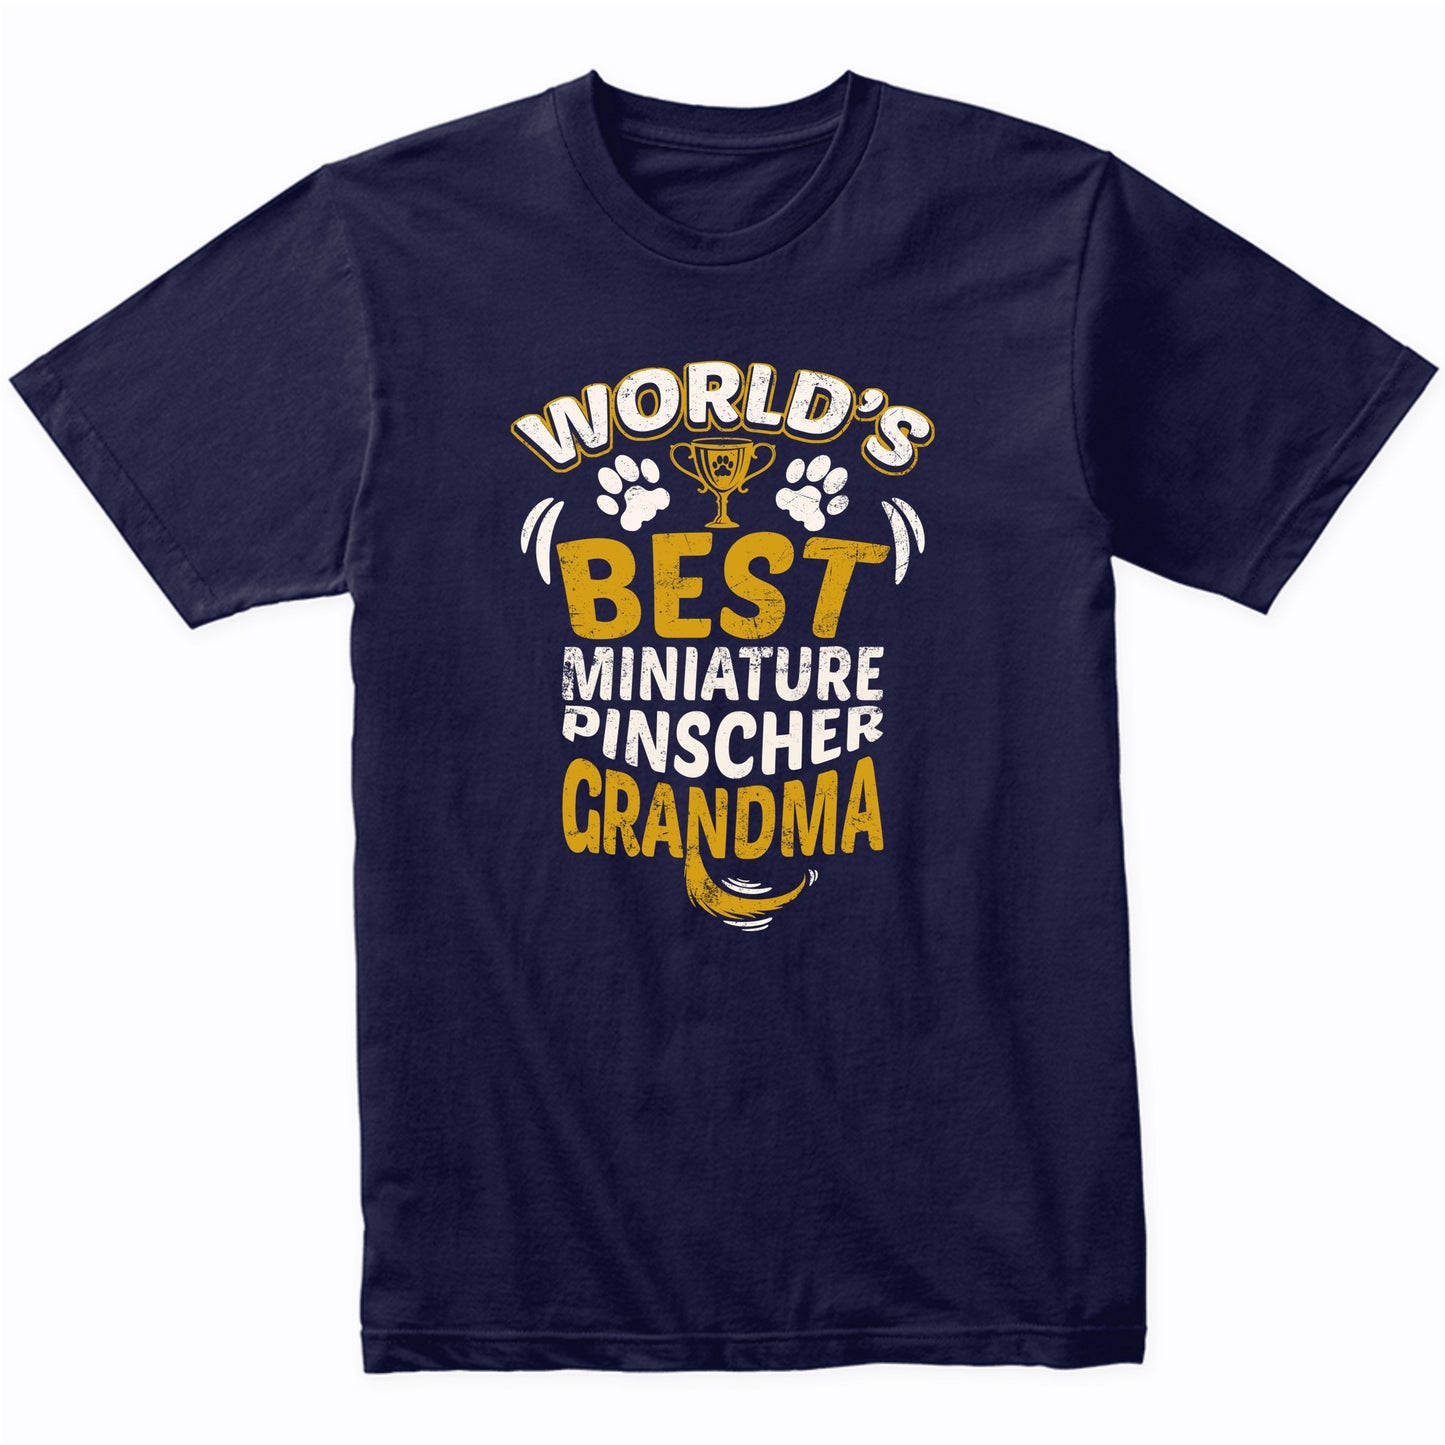 World's Best Miniature Pinscher Grandma Graphic T-Shirt